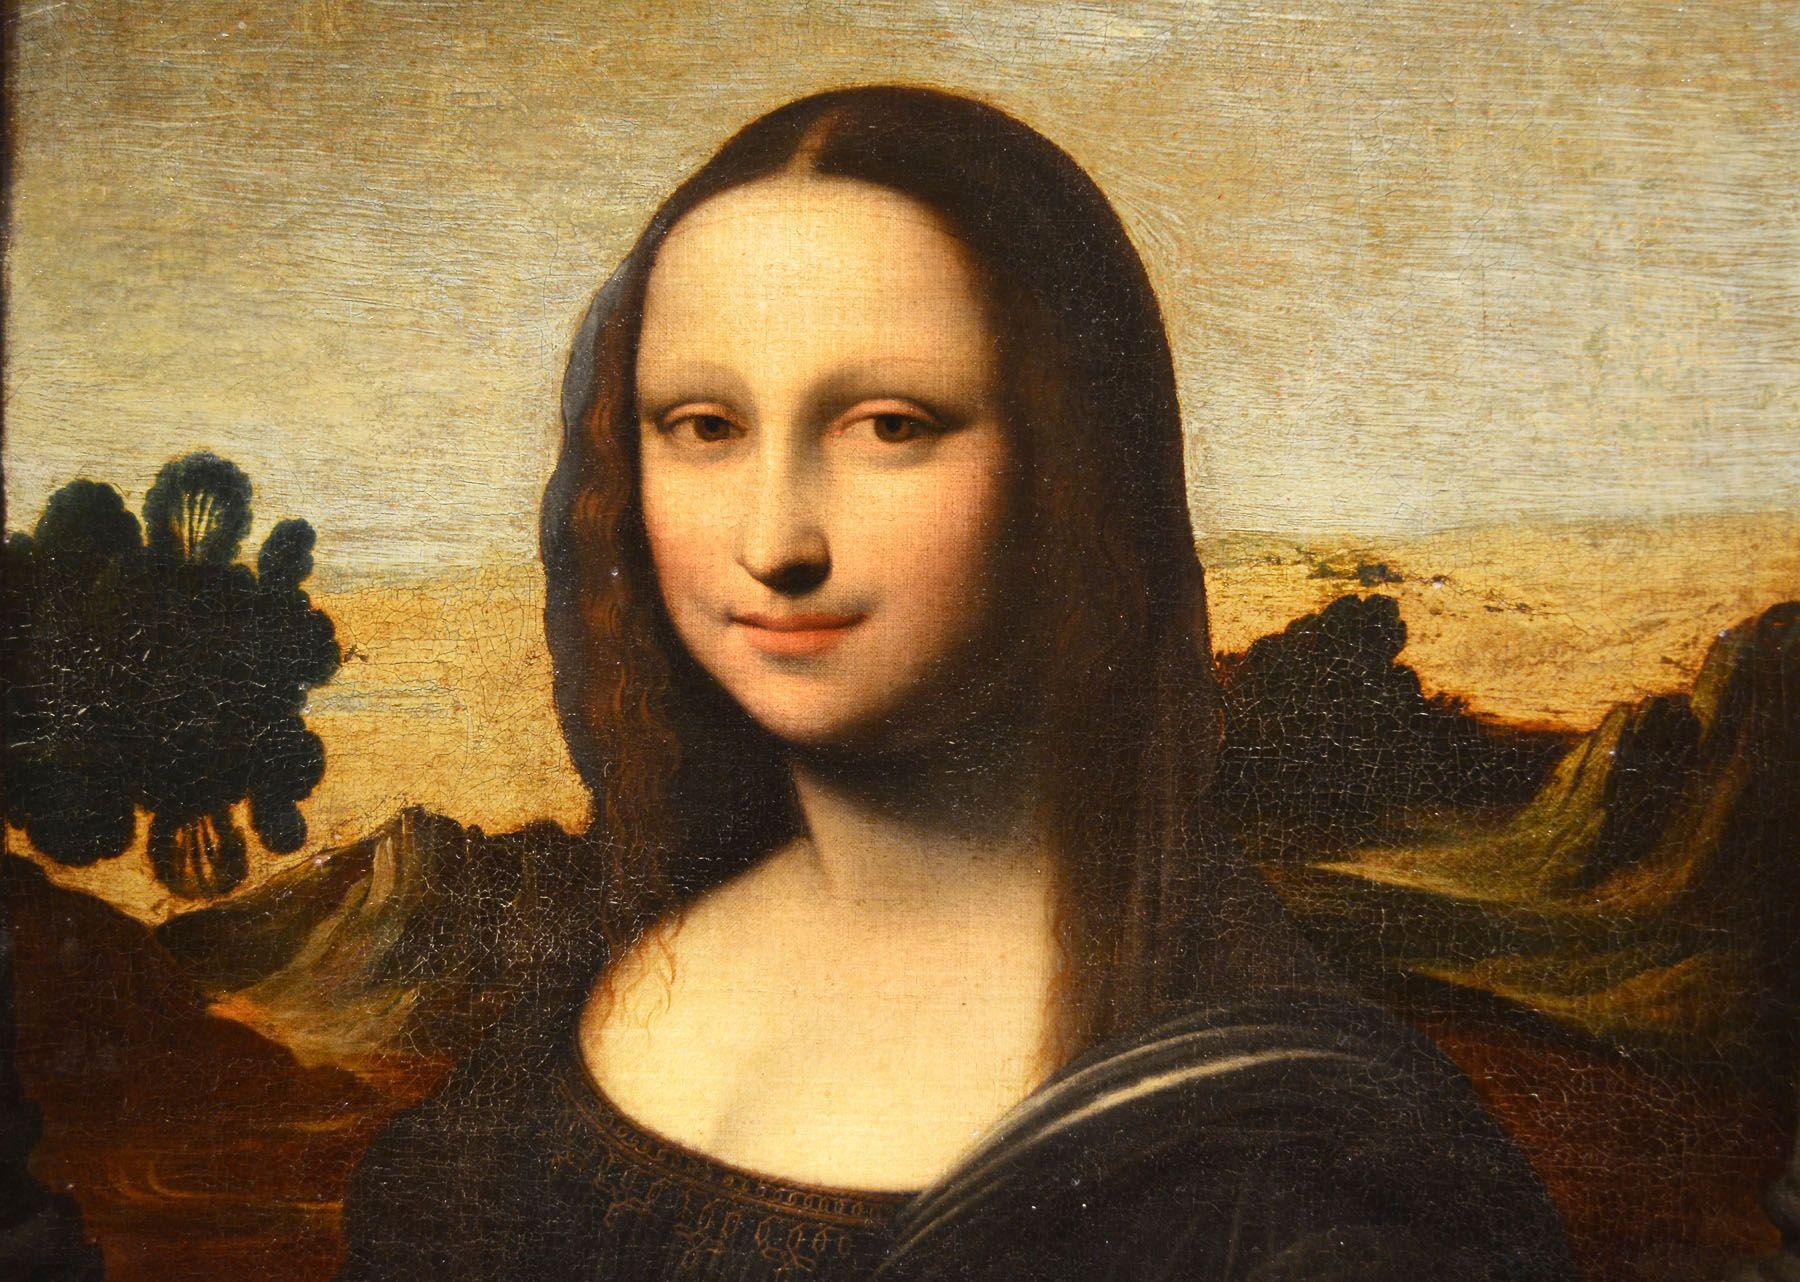 Mona Lisa Desktop Wallpapers - Top Free Mona Lisa Desktop Backgrounds ...